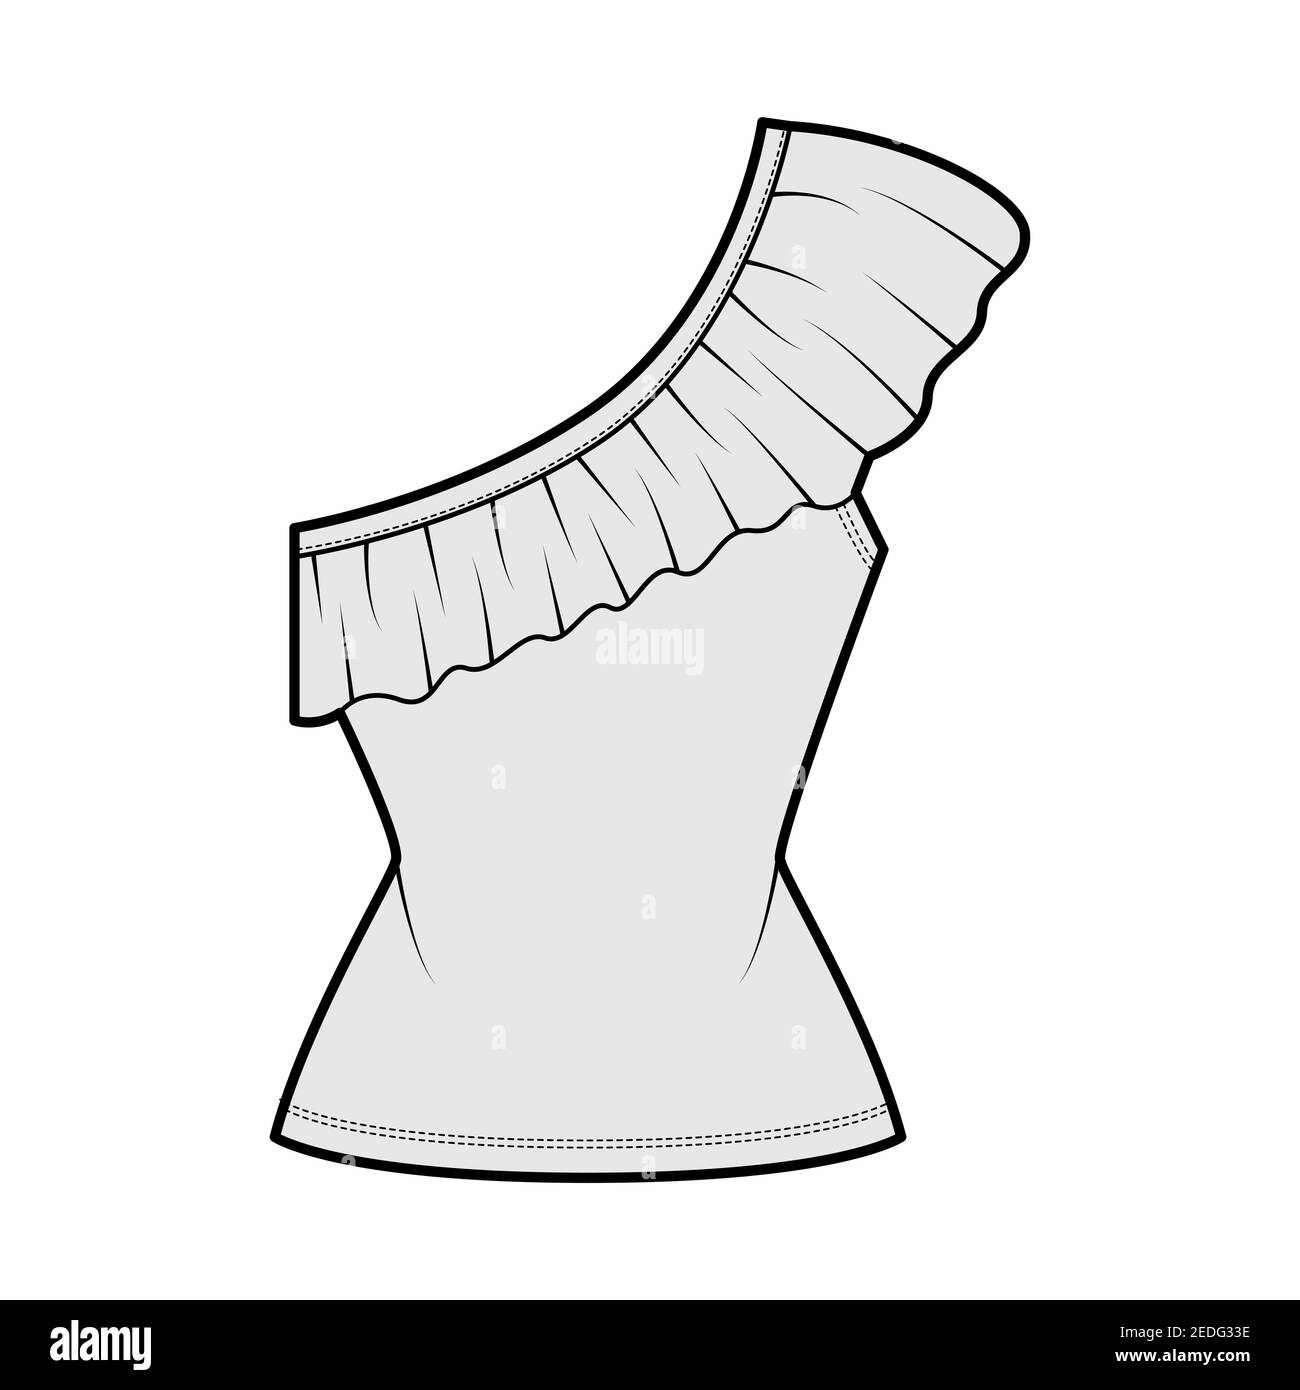 Haut d'une épaule illustration technique de mode avec des volants, corps ajusté, coton extensible. Modèle de chemise à vêtements plats sur le devant, couleur grise. Femmes, hommes unisex CAD maquette Illustration de Vecteur